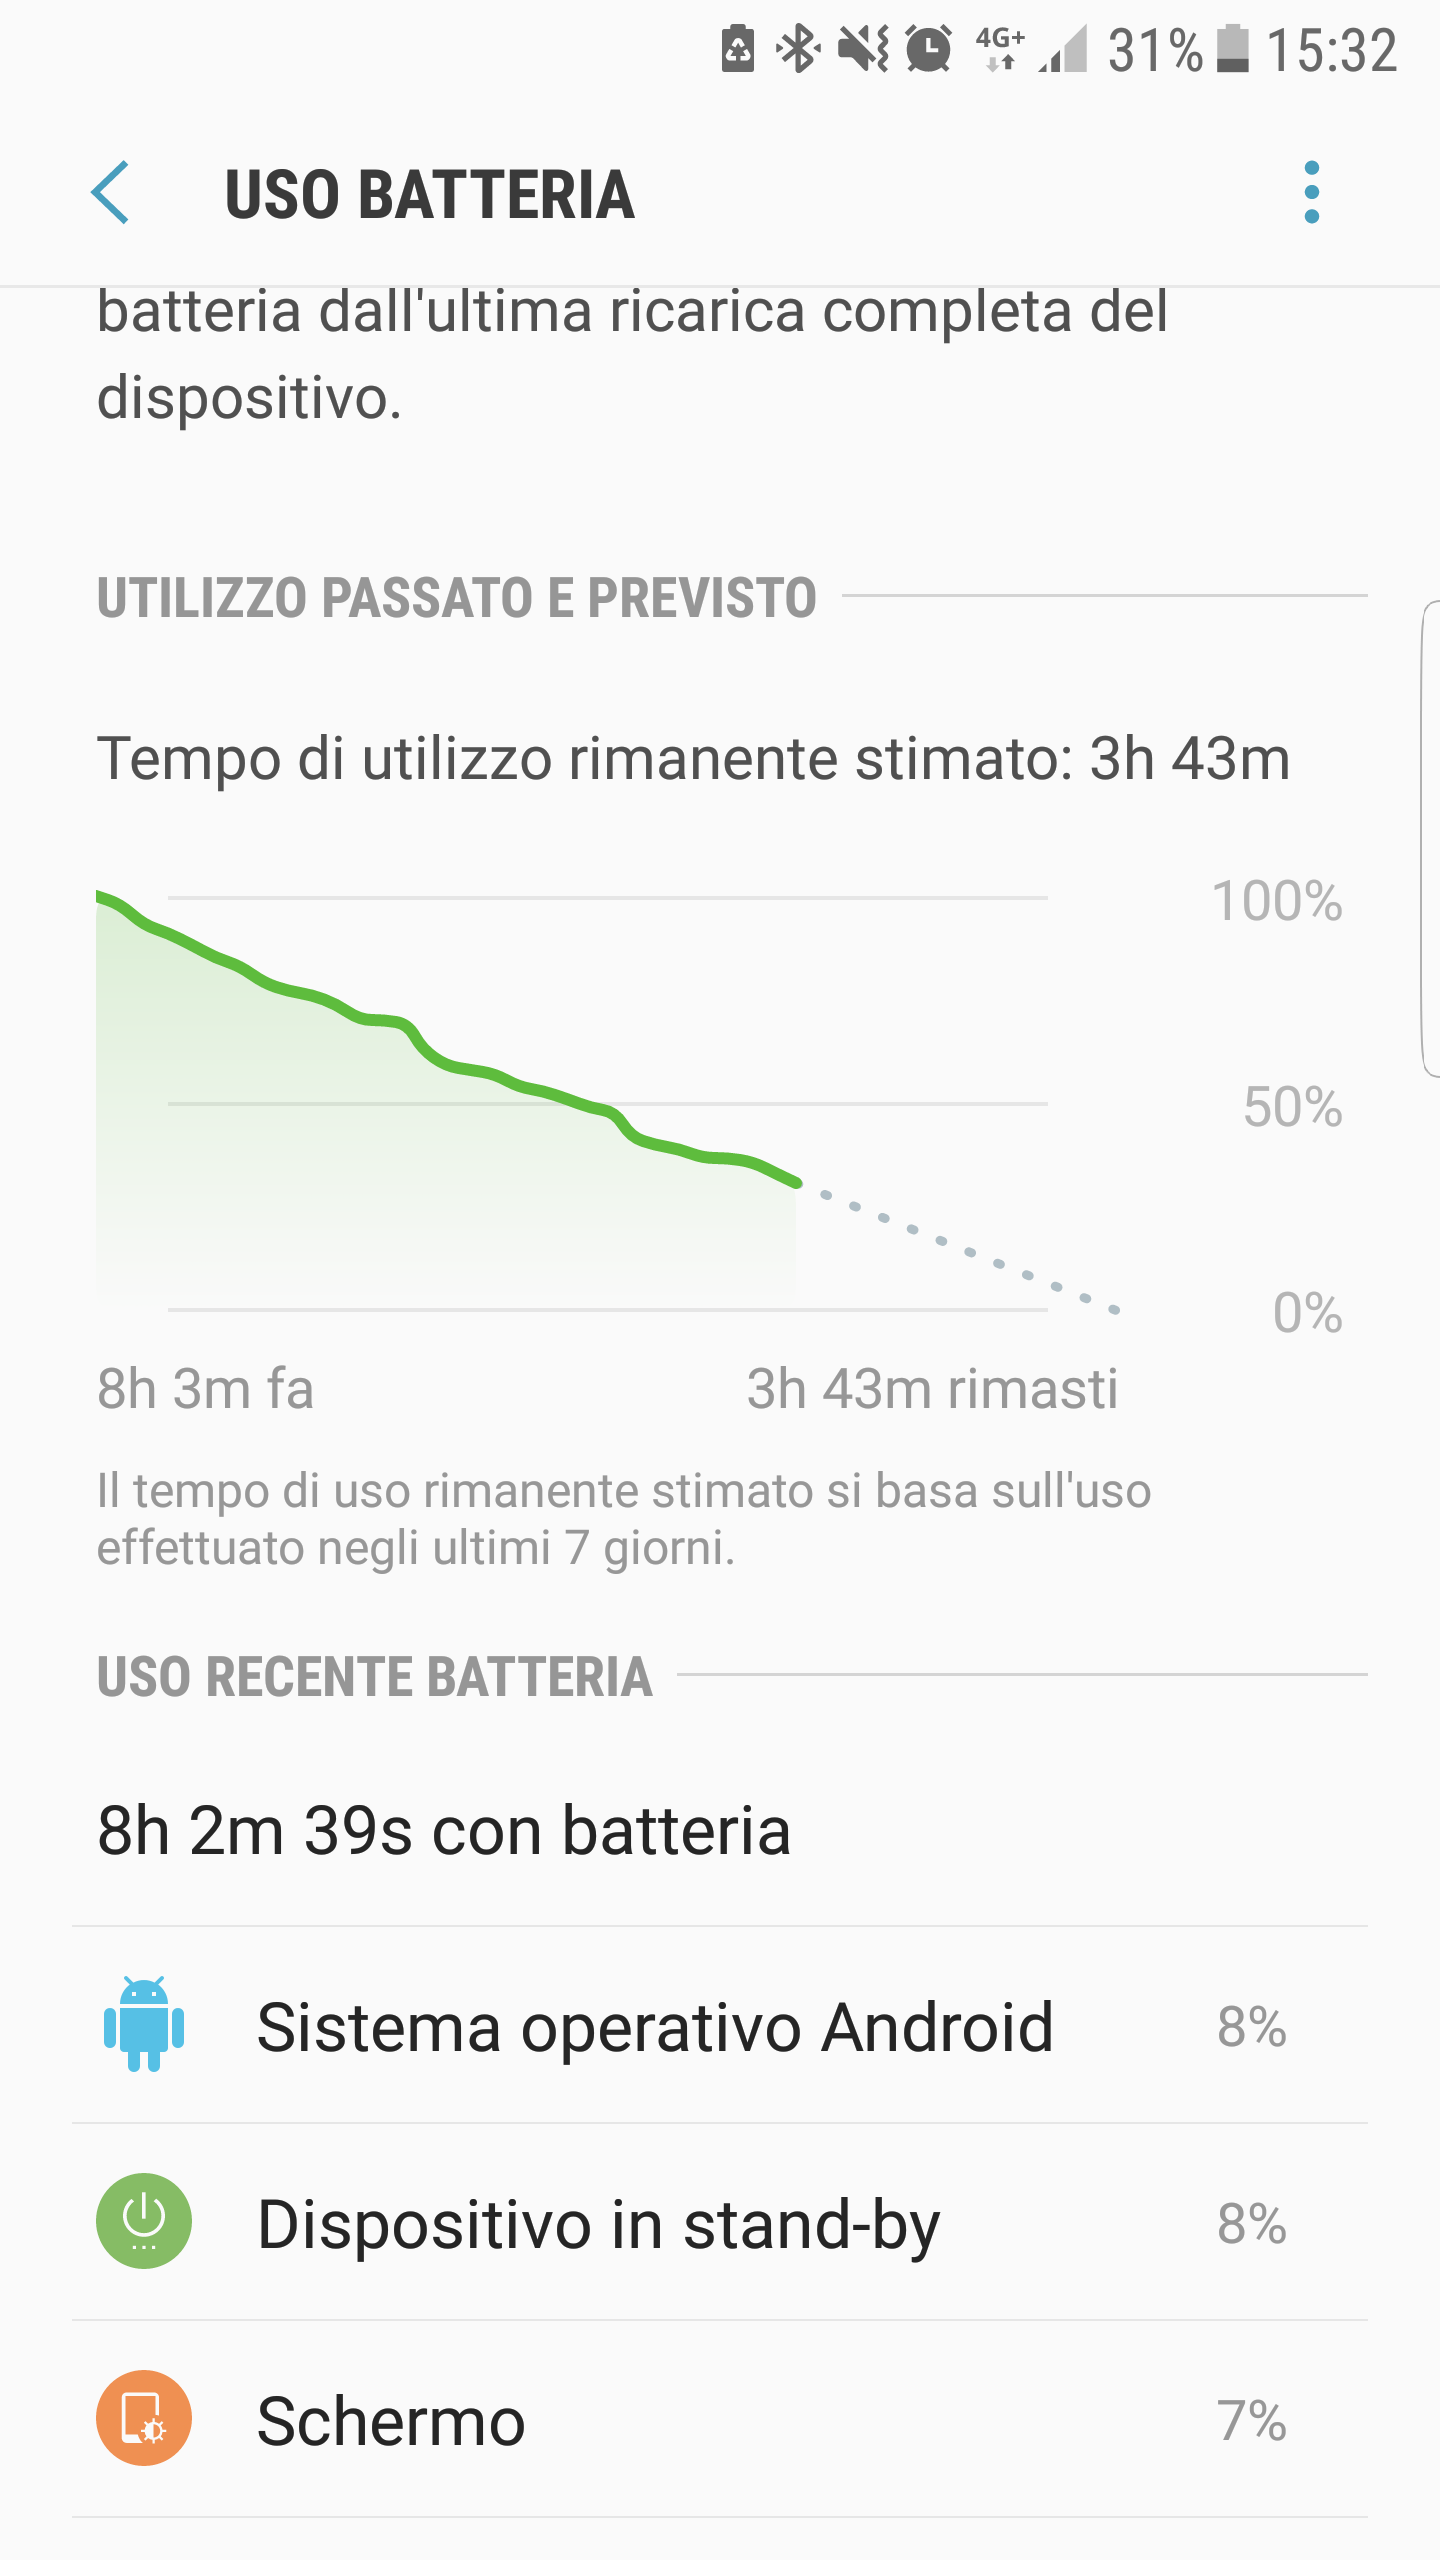 Consumo anomalo batteria a causa di Sistema operativo Android dopo ultimi  aggiornamenti - Galaxy S6 - Pagina 3 - Samsung Community